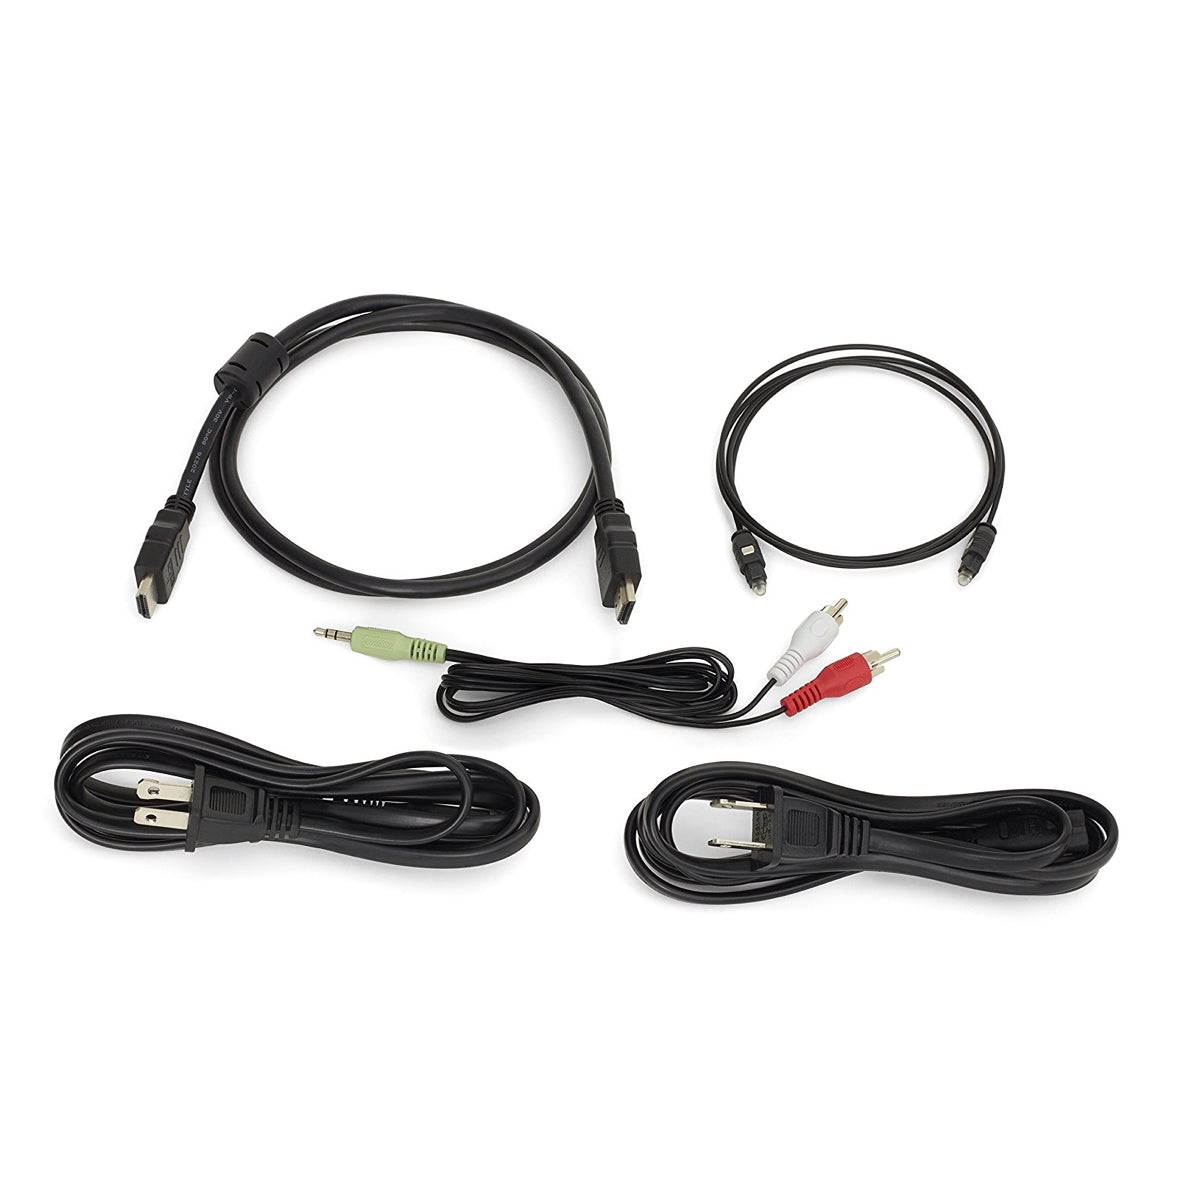 JBL Cinema SB-250 Wireless Bluetooth Soundbar and Subwoofer, JBL, Soundbar - AVStore.in